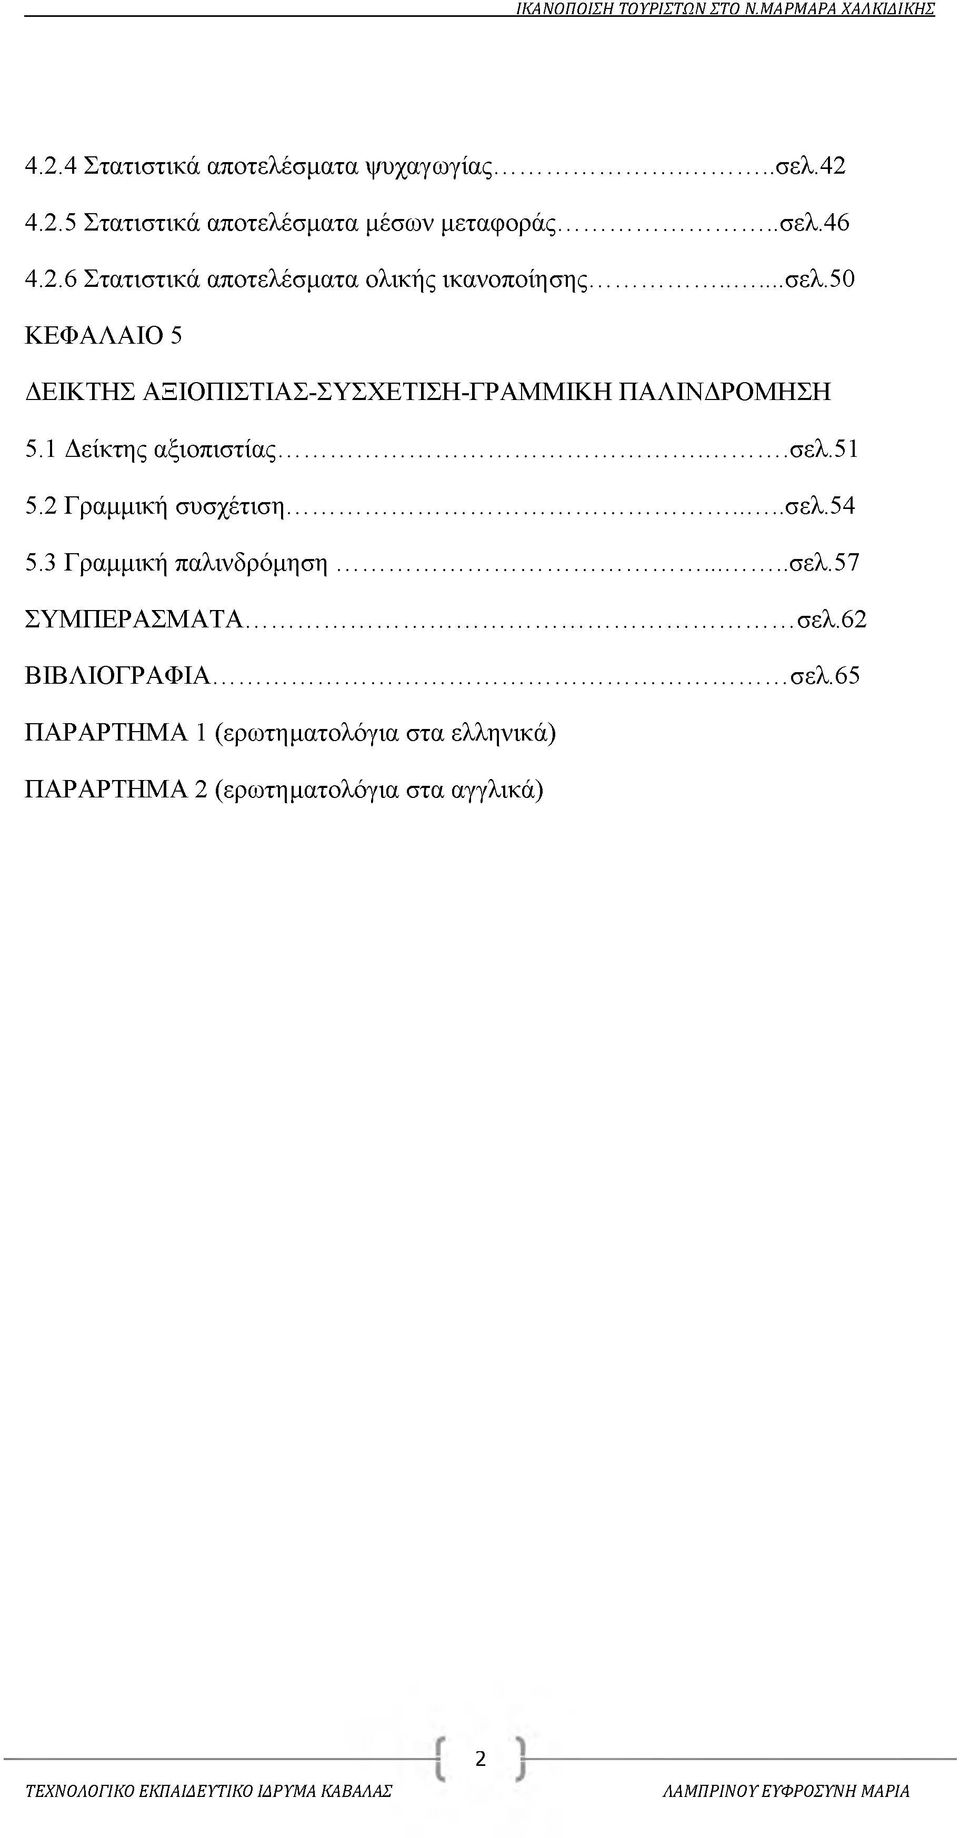 2 Γραμμική συσχέτιση... σελ.54 5.3 Γραμμική παλινδρόμηση... σελ.57 ΣΥΜΠΕΡΑΣΜΑΤΑ... σελ.62 ΒΙΒΛΙΟΓΡΑΦΙΑ... σελ.65 ΠΑΡΑΡΤΗΜΑ 1 (ερωτηματολόγια στα ελληνικά) ΠΑΡΑΡΤΗΜΑ 2 (ερωτηματολόγια στα αγγλικά) 2